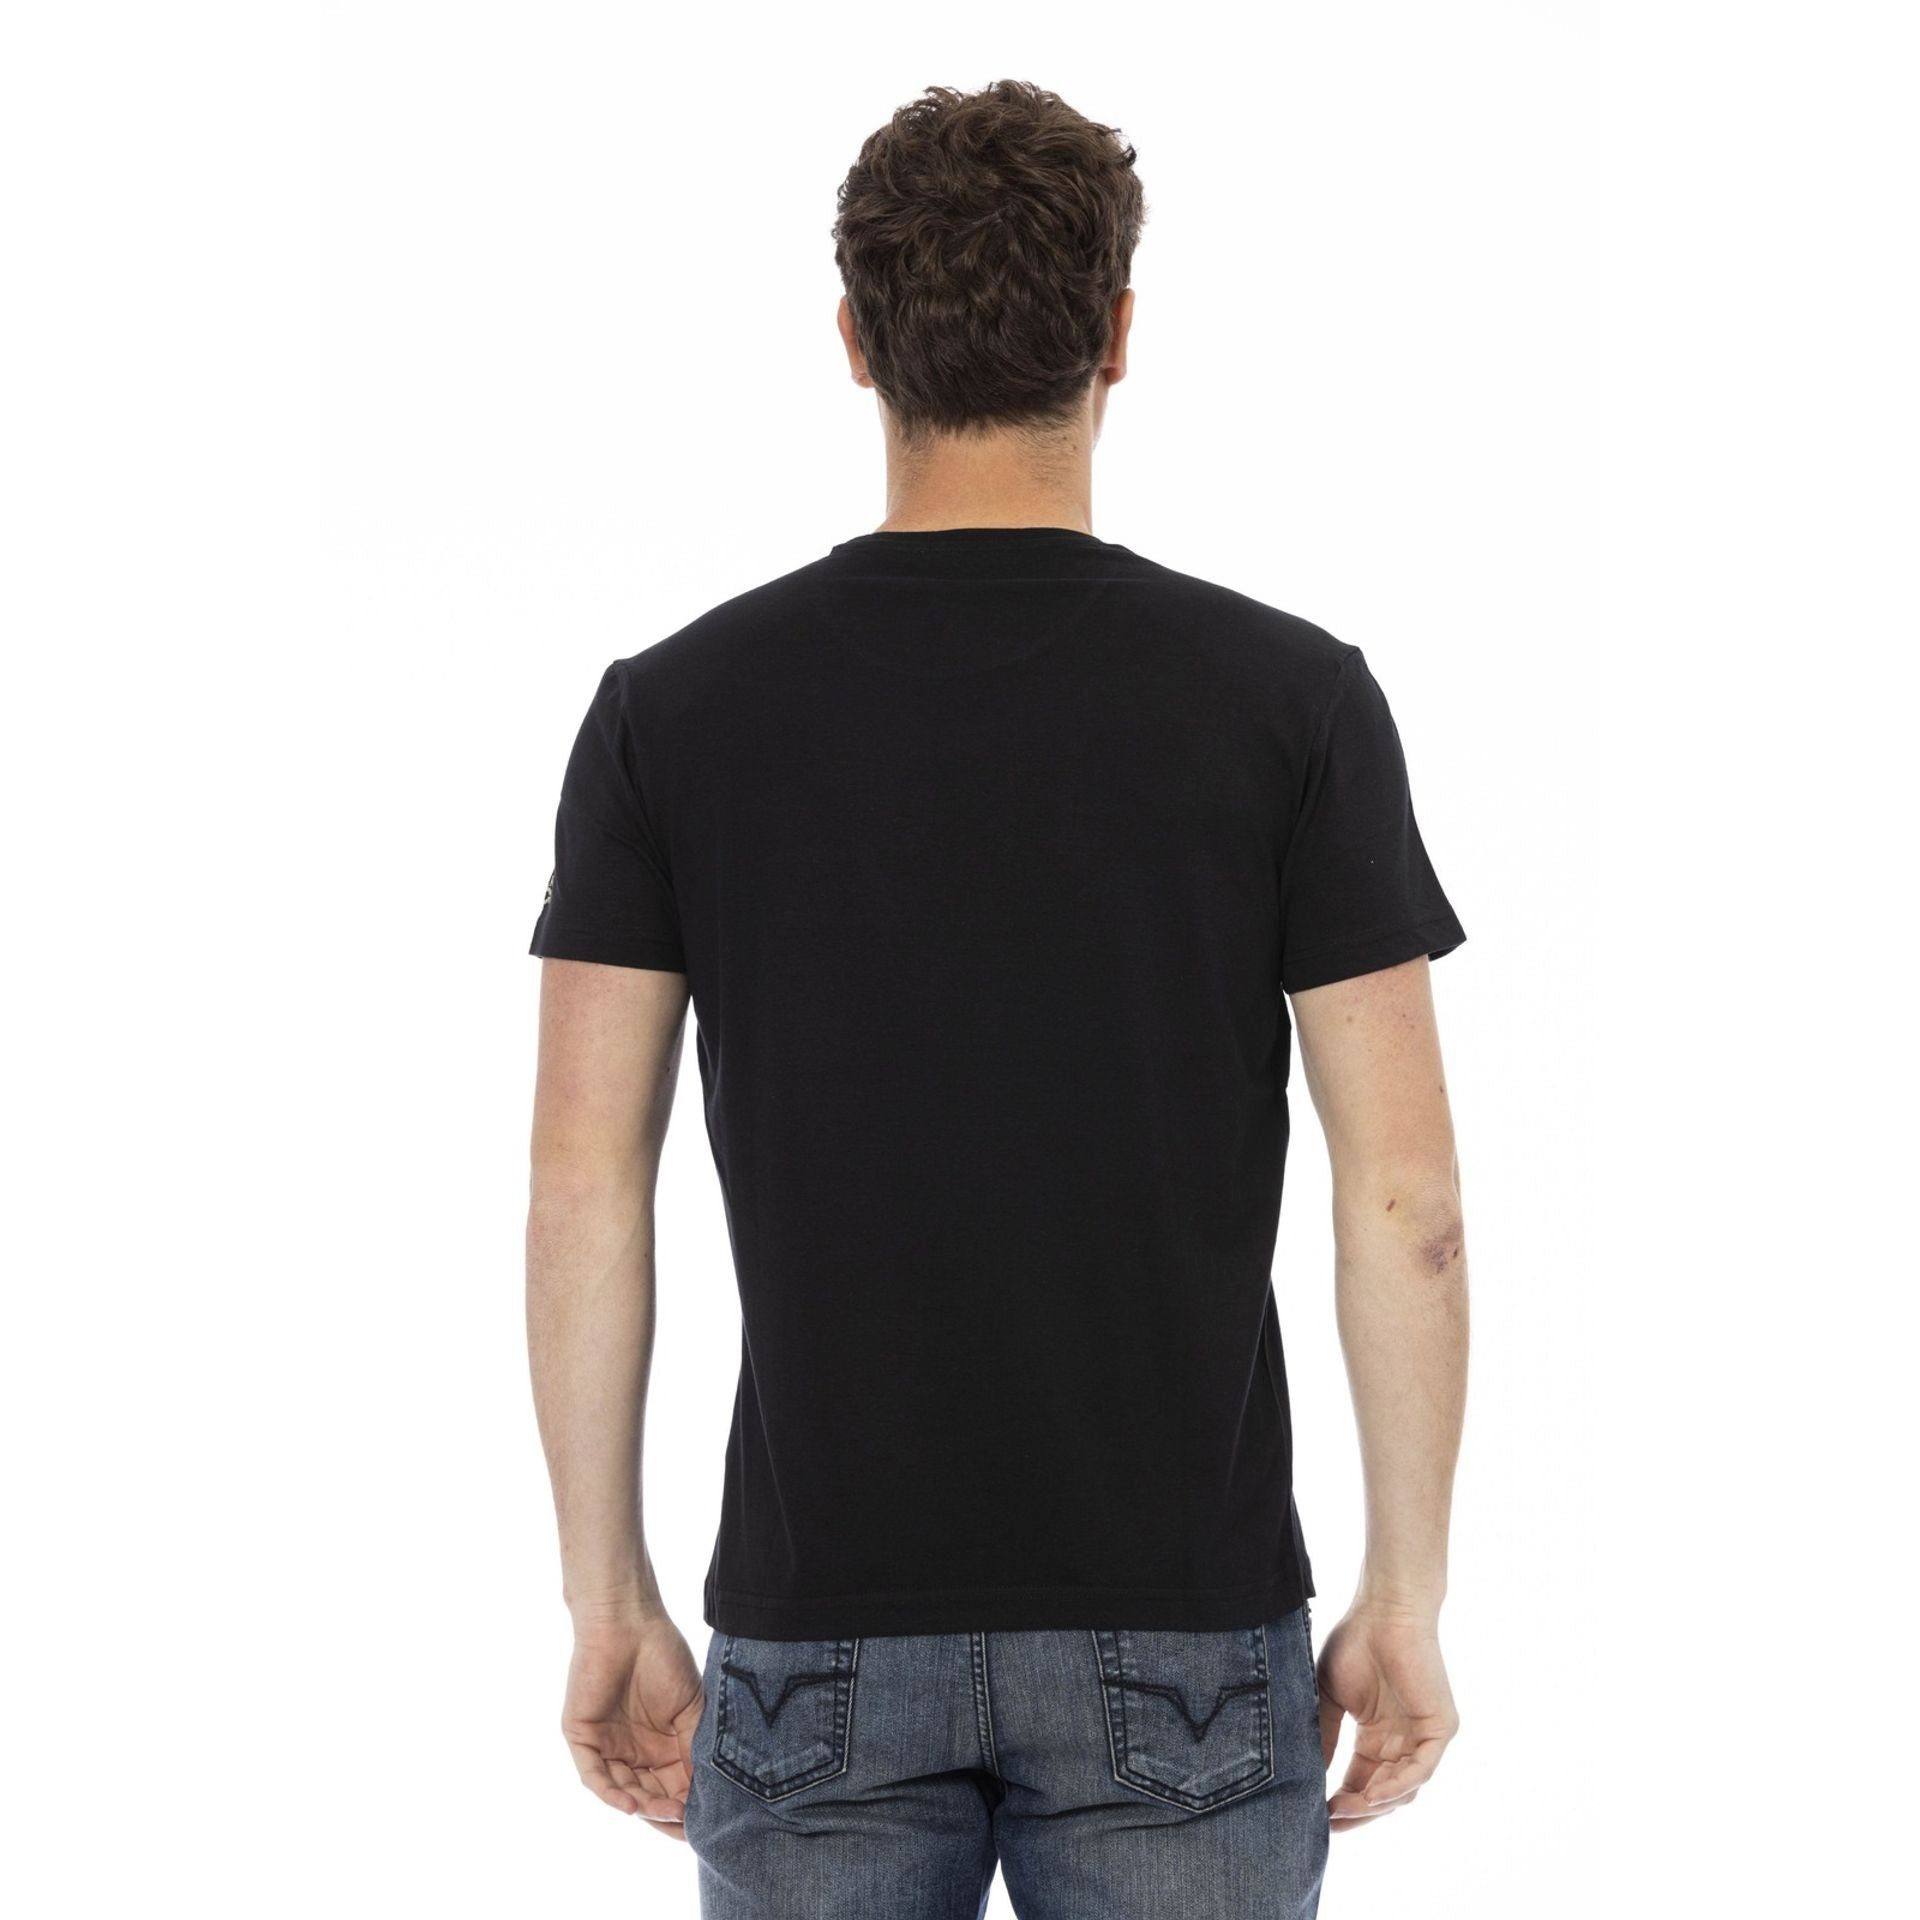 Trussardi aber Trussardi sich Es stilvolle aus, T-Shirts, Logo-Muster durch subtile, das verleiht Schwarz eine T-Shirt das zeichnet Note Action